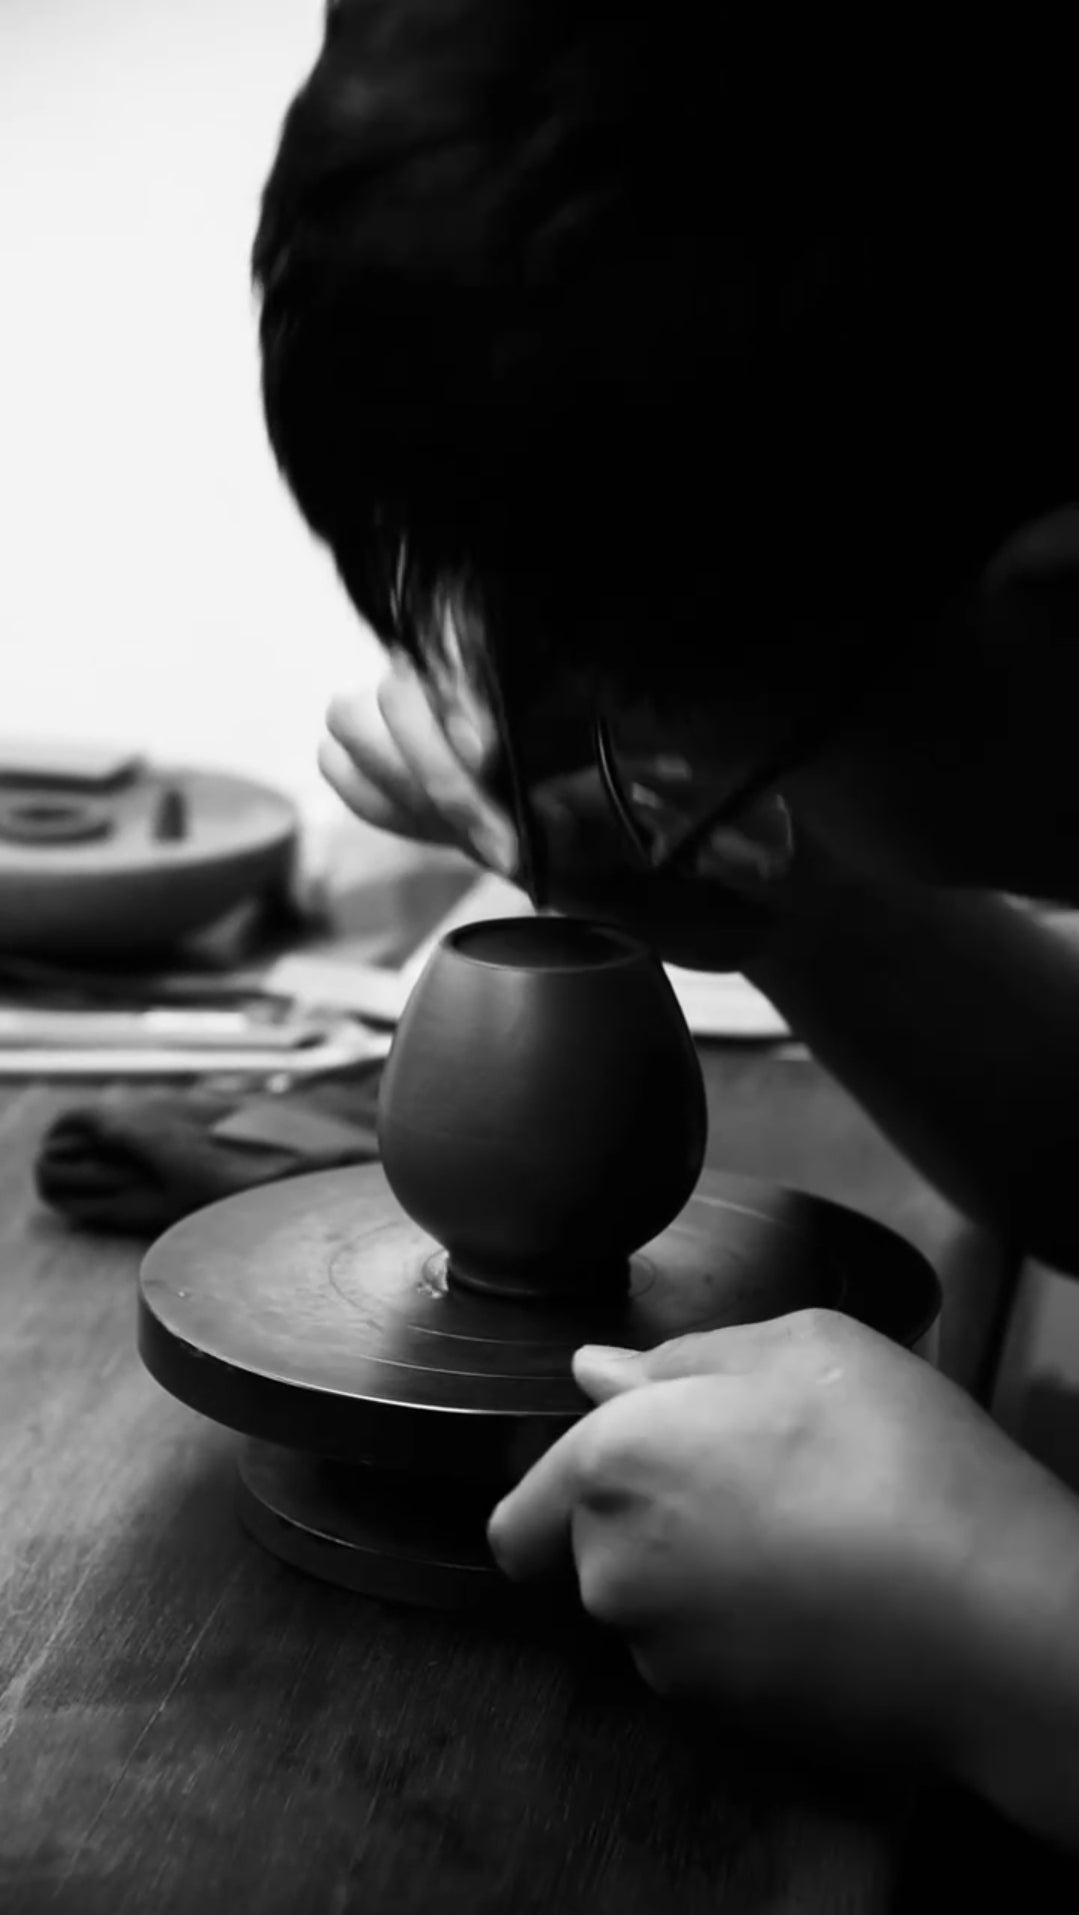 Sang Bian 桑扁, Gu Fa Lian Ni (Most Archaic Clay Forming) ~ Zhu Ni *古法练泥~朱泥, L4 Assoc Master Du Cheng Yao 堵程尧。